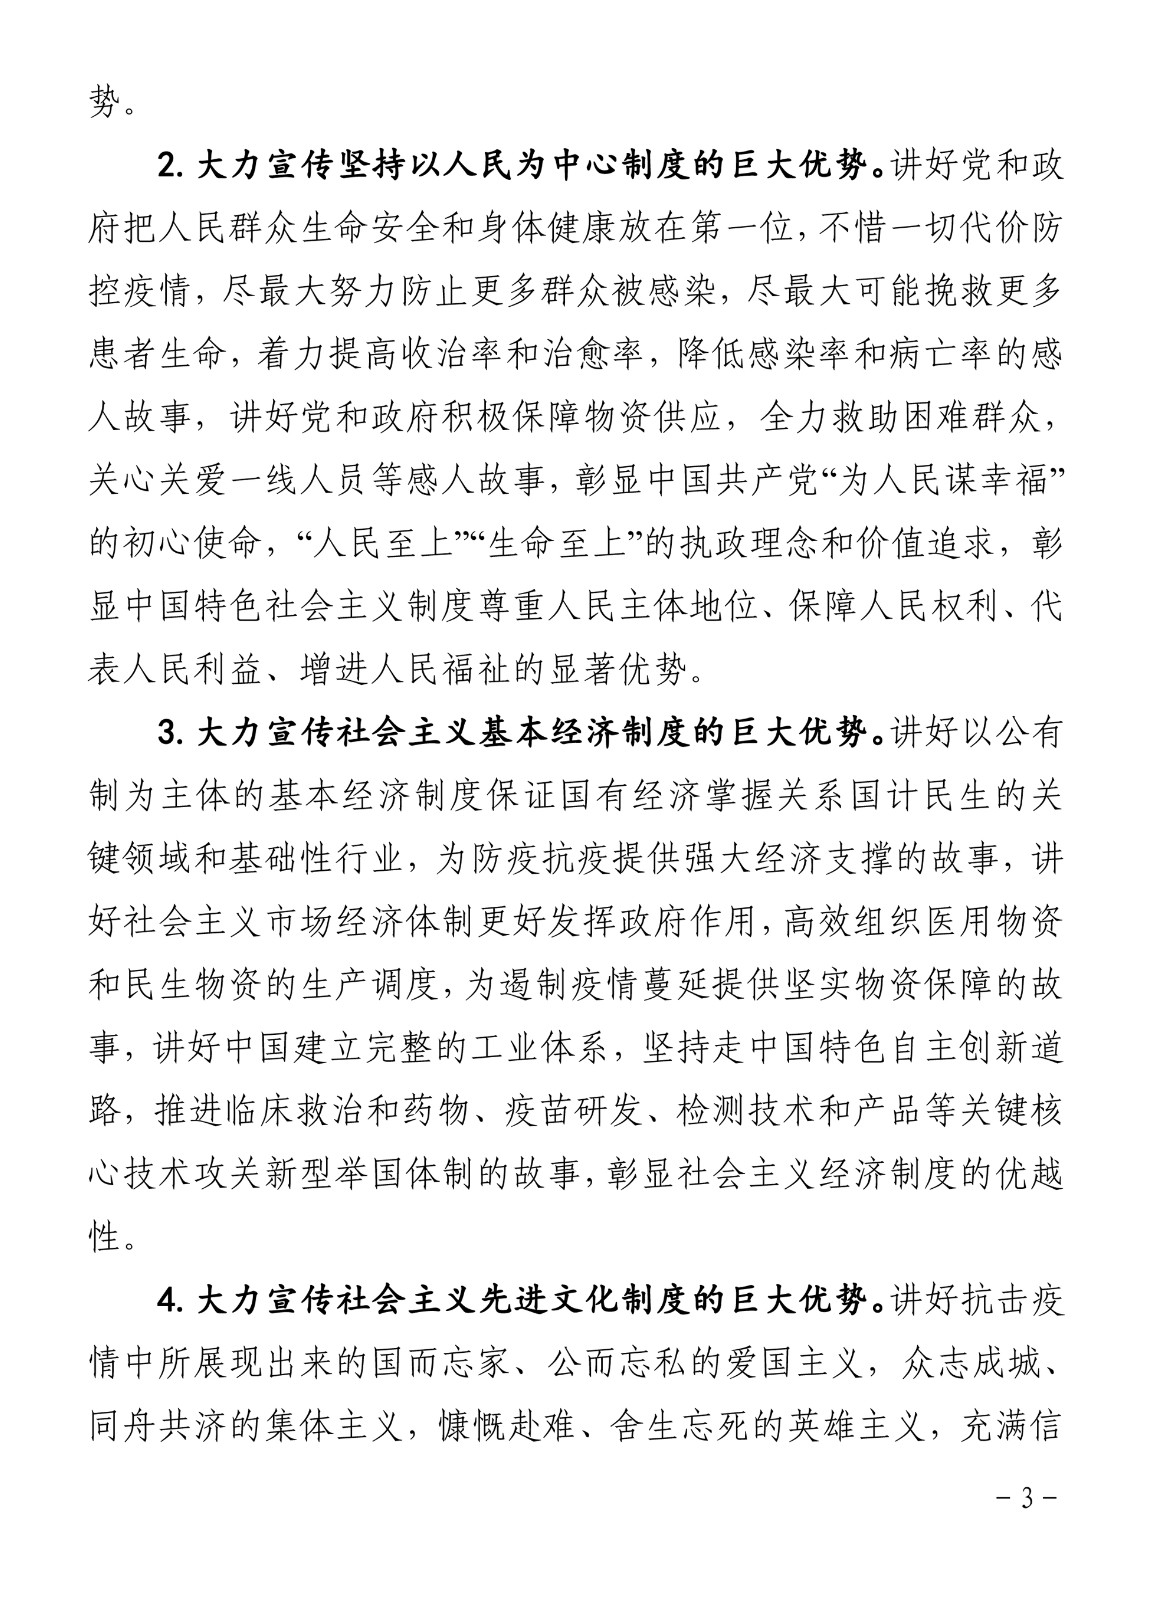 关于开展“战役密码：中国之治”主题微宣讲活动的通知-3.jpg